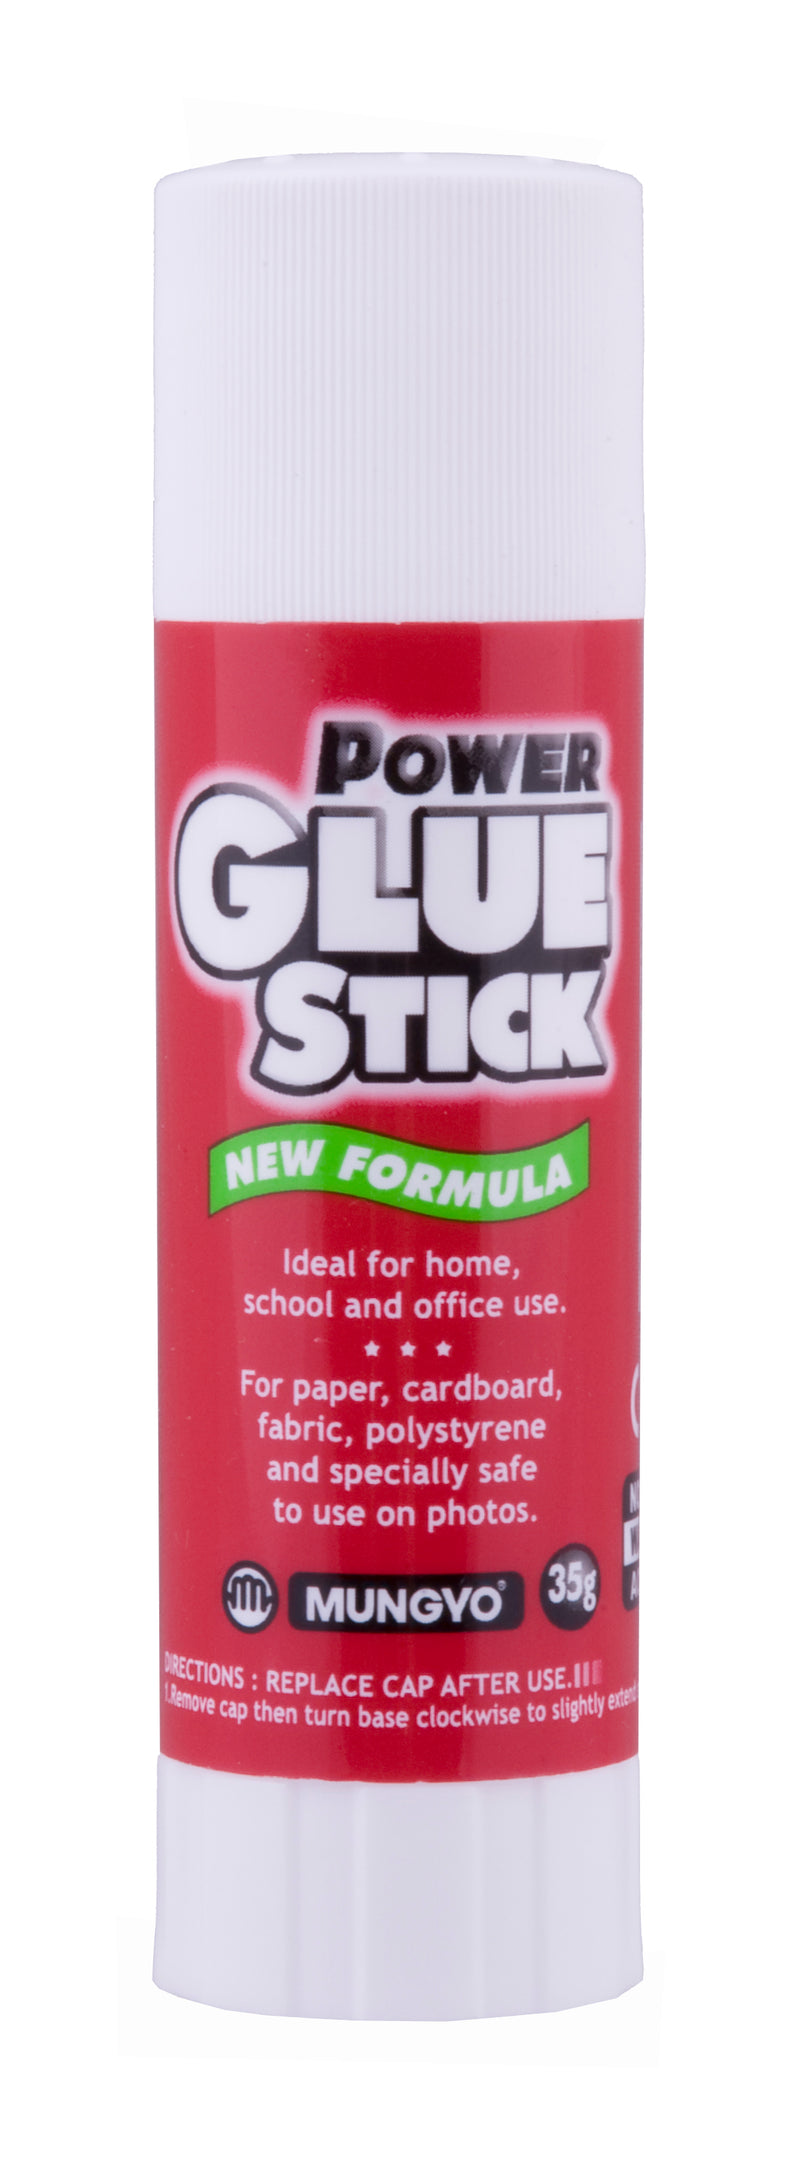 Mungyo Power Glue Stick 35 Gram